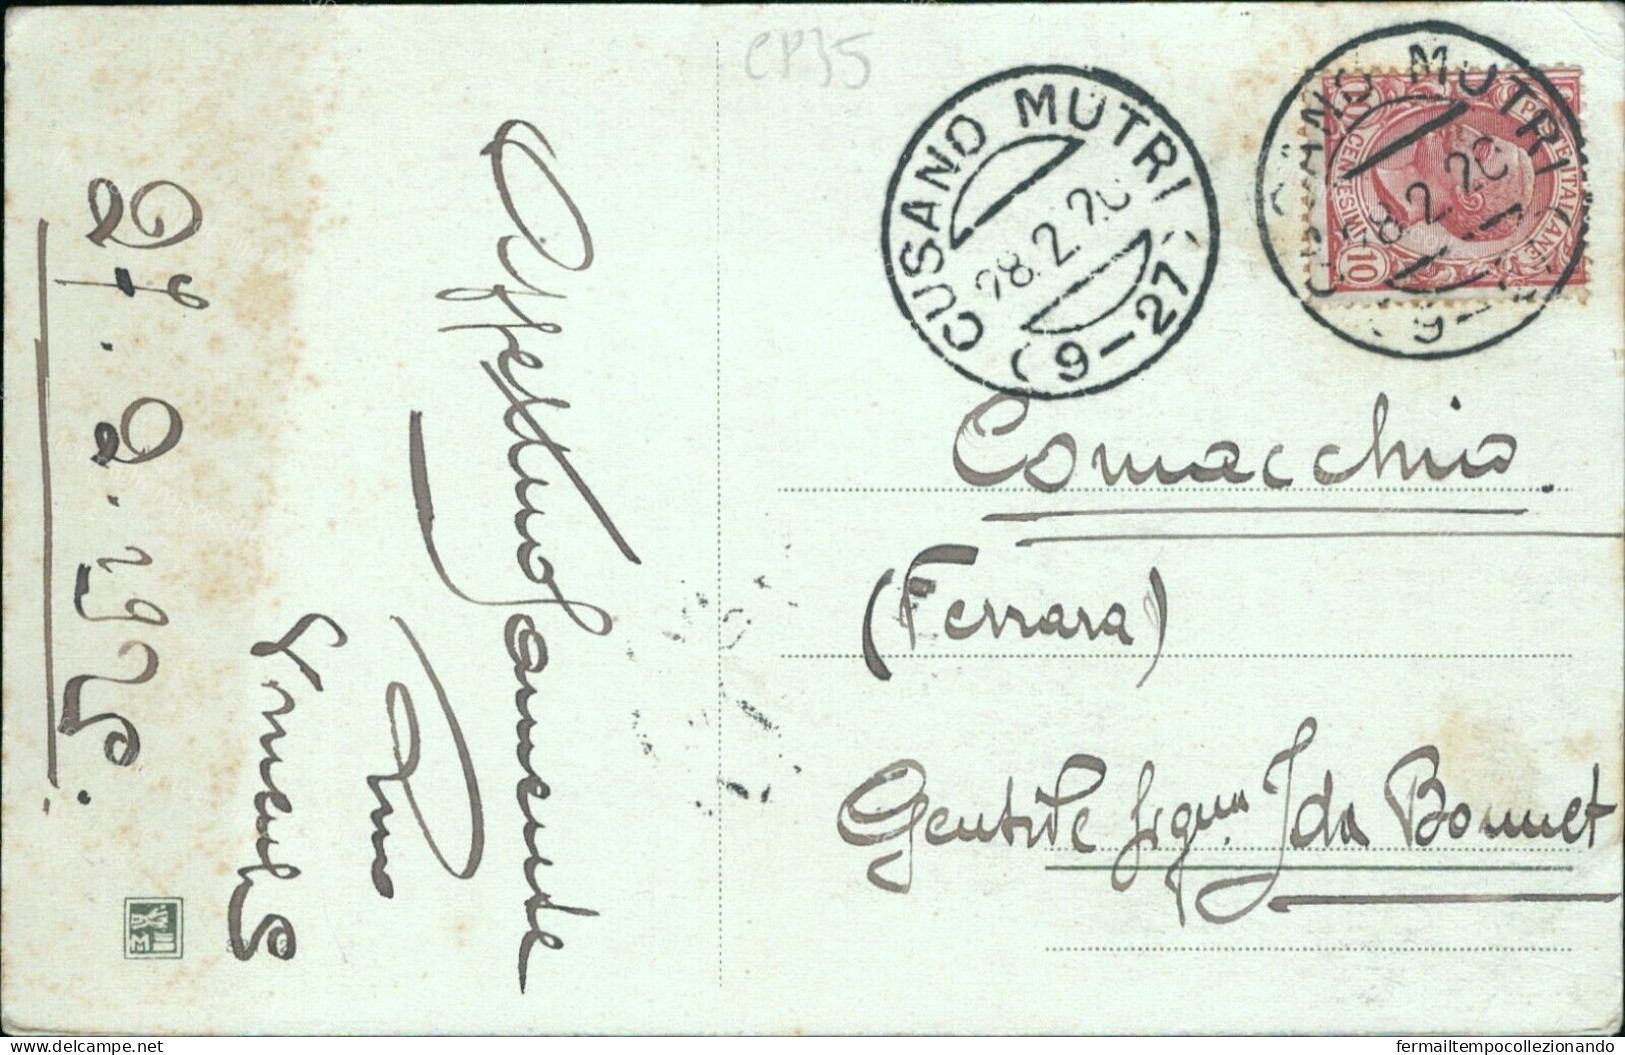 Cp35 Cartolina Cusano Mutri   1929 Provincia Di Benevento Campania - Benevento